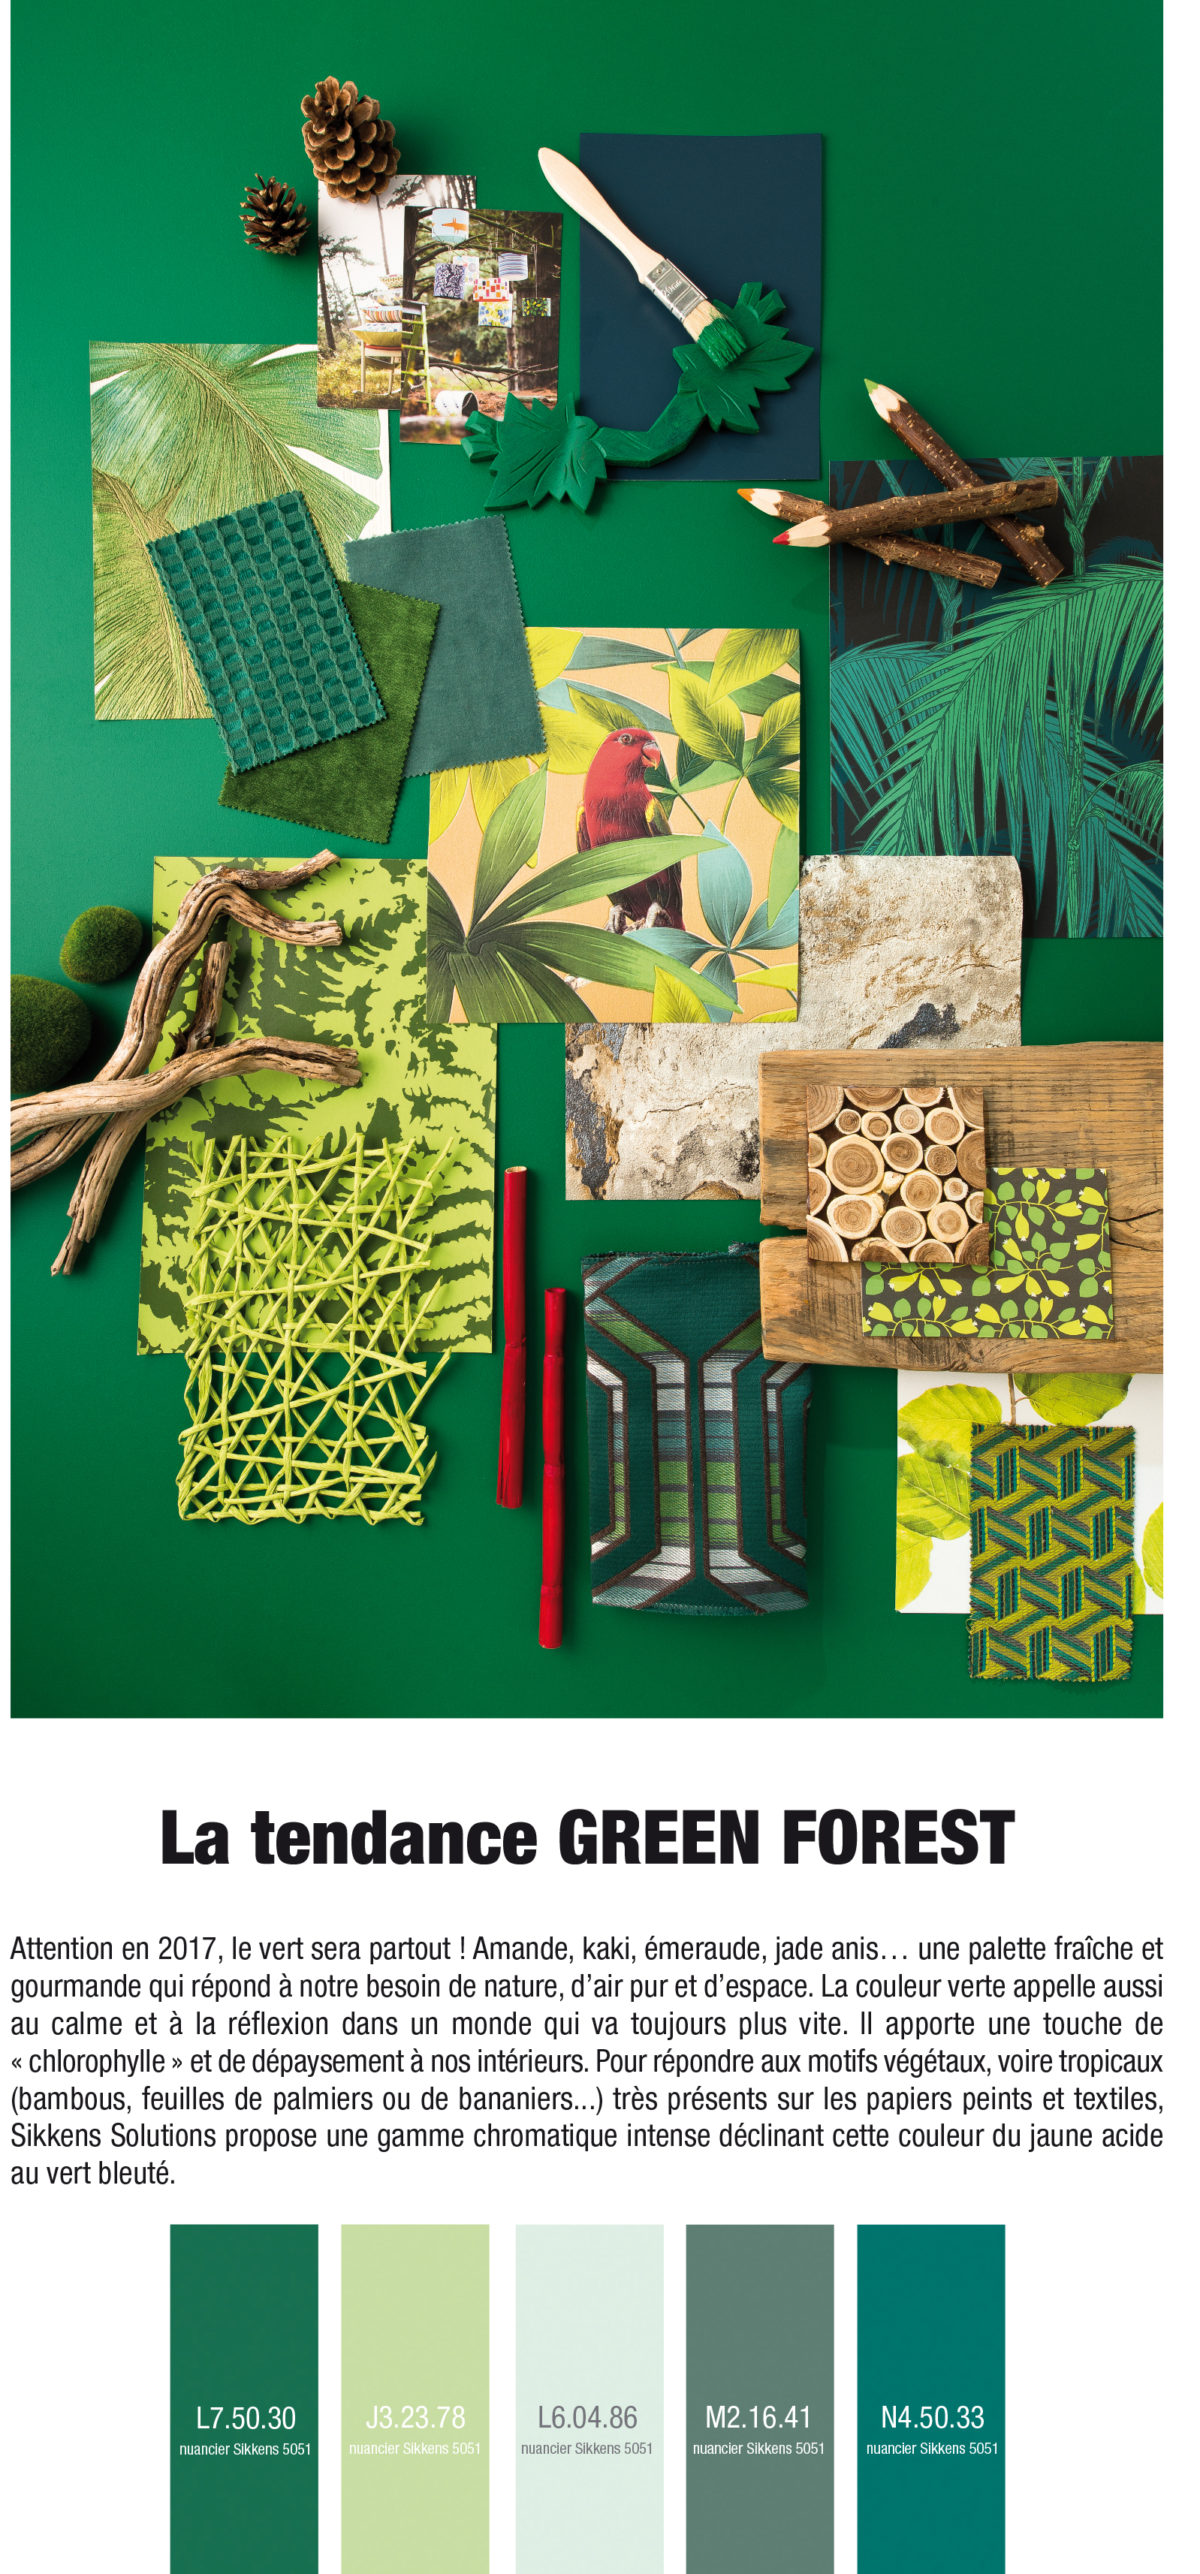 Pêle mêle de matériaux (papiers peints, tissus, peintures, bois...) exprimant la tendance décorative Green Forest